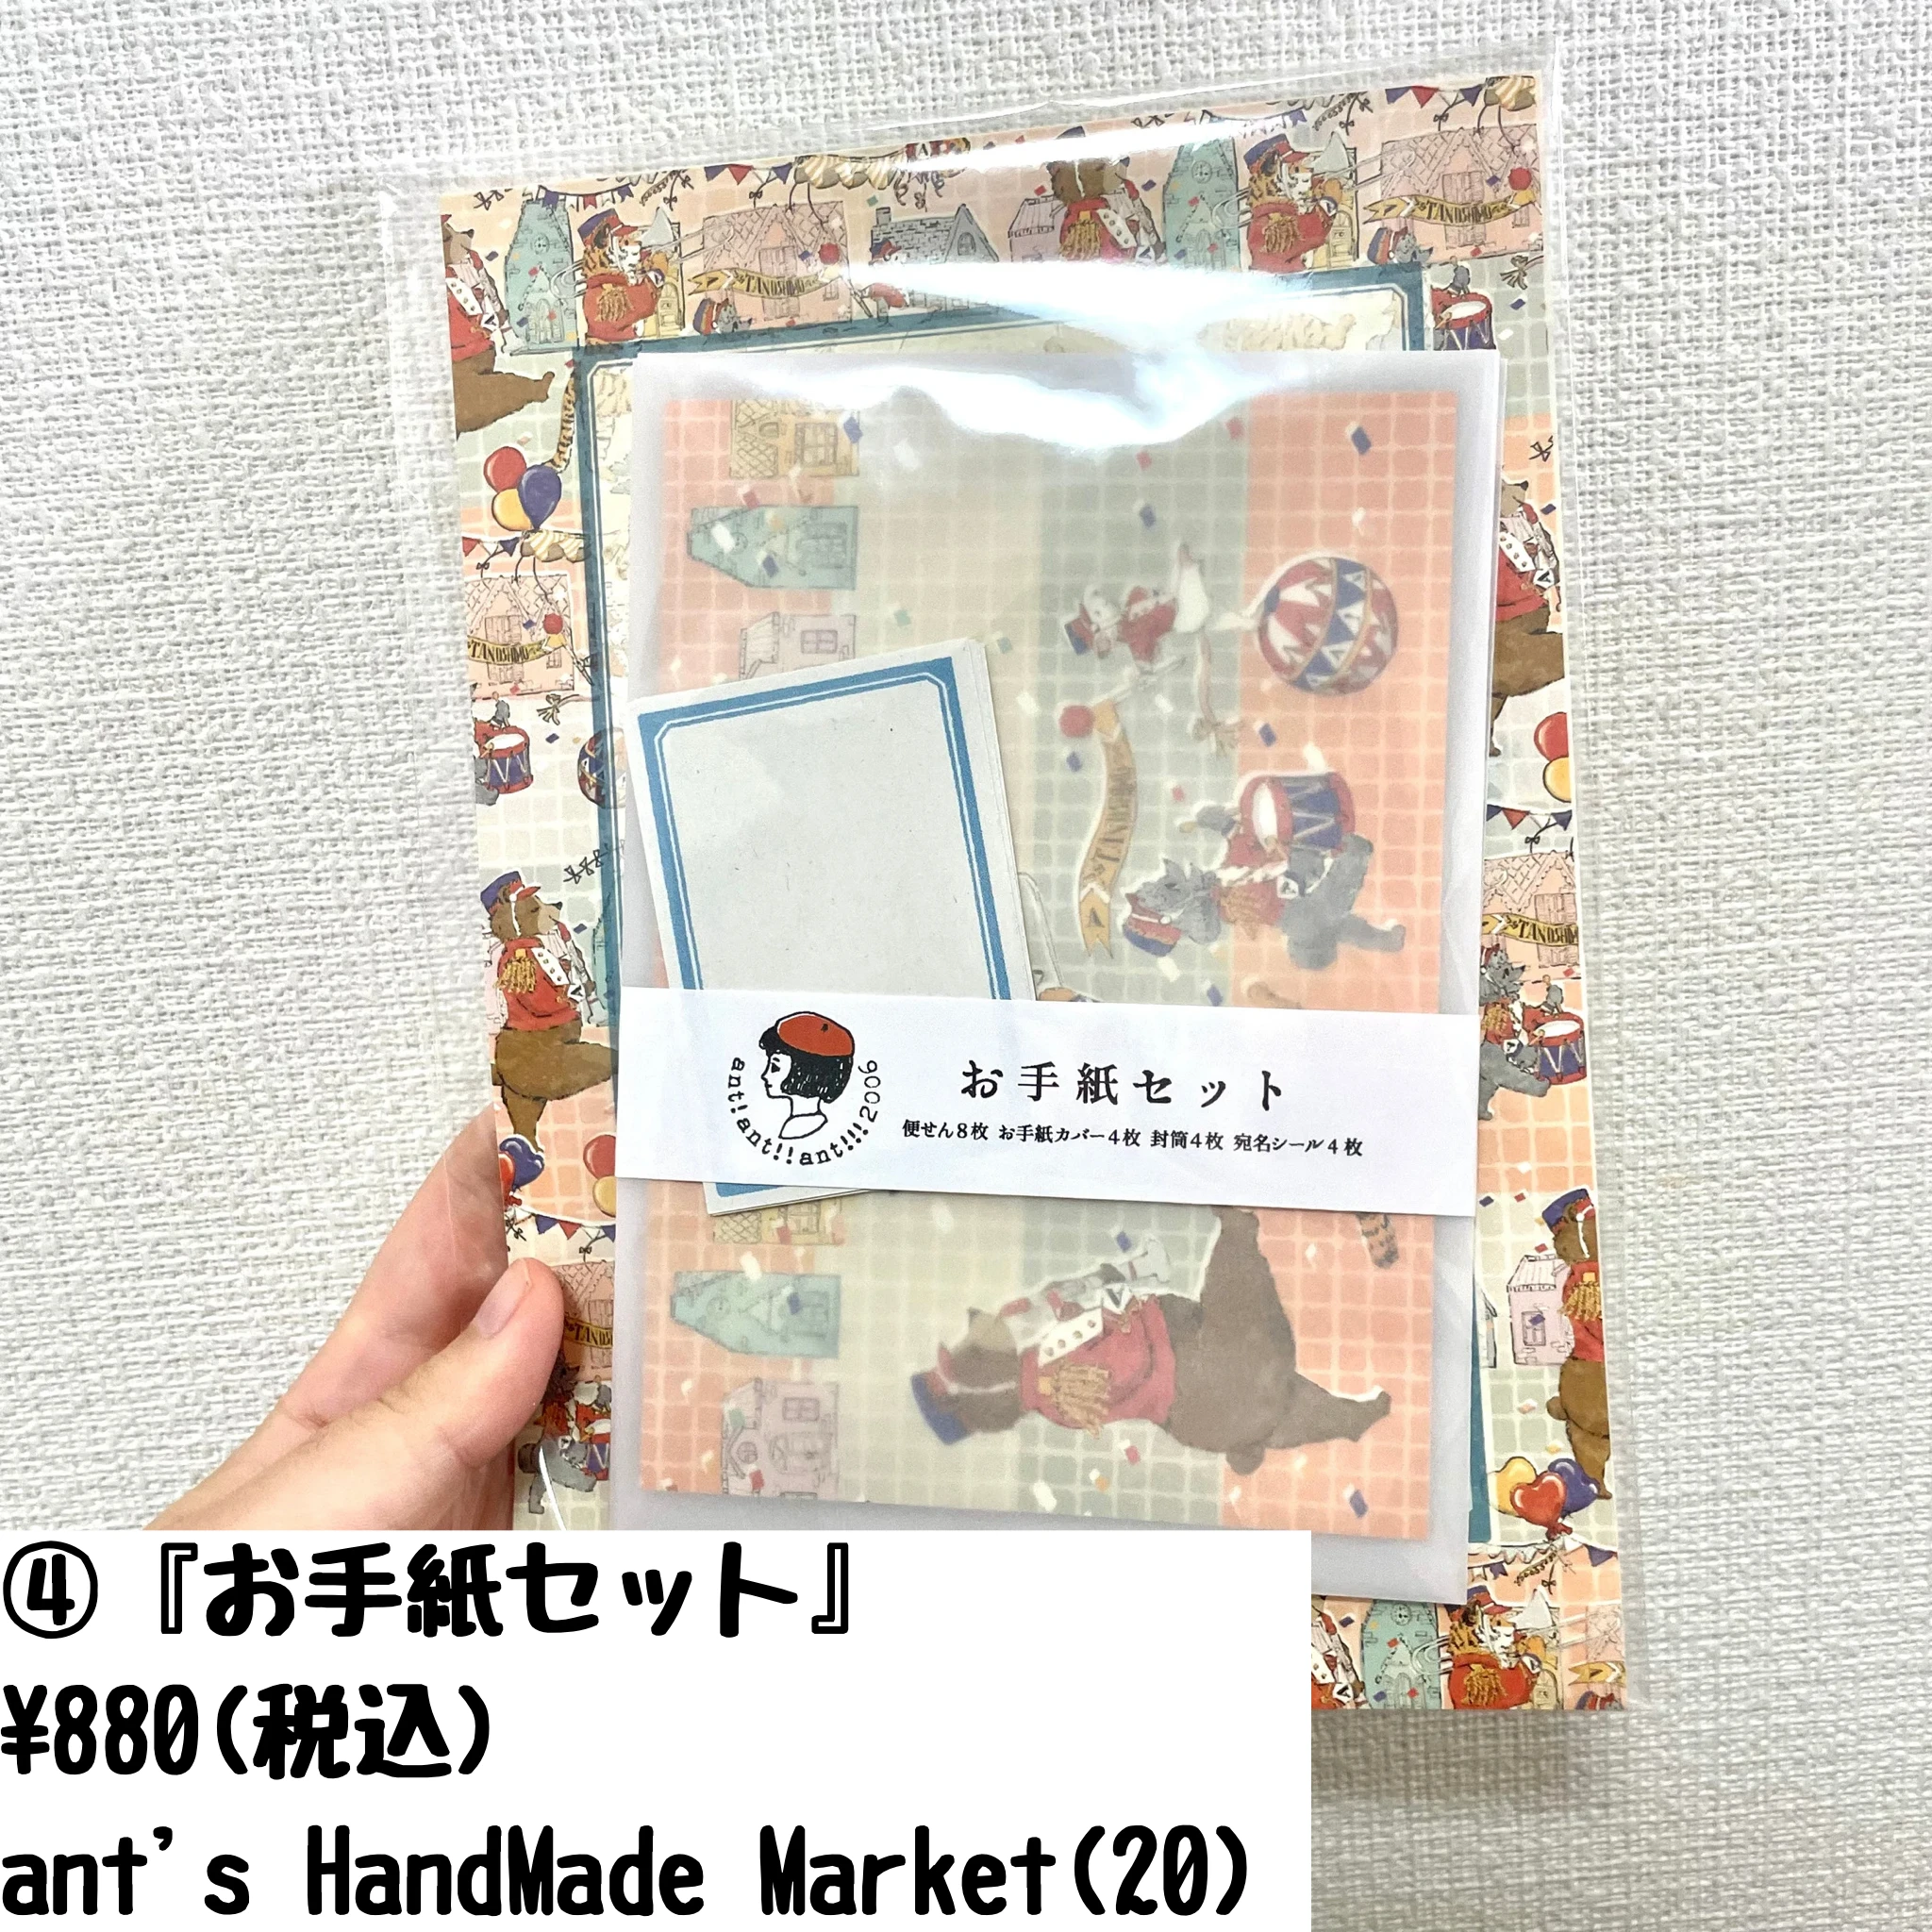 お手紙セット
ant&#039;s Handmade Market 